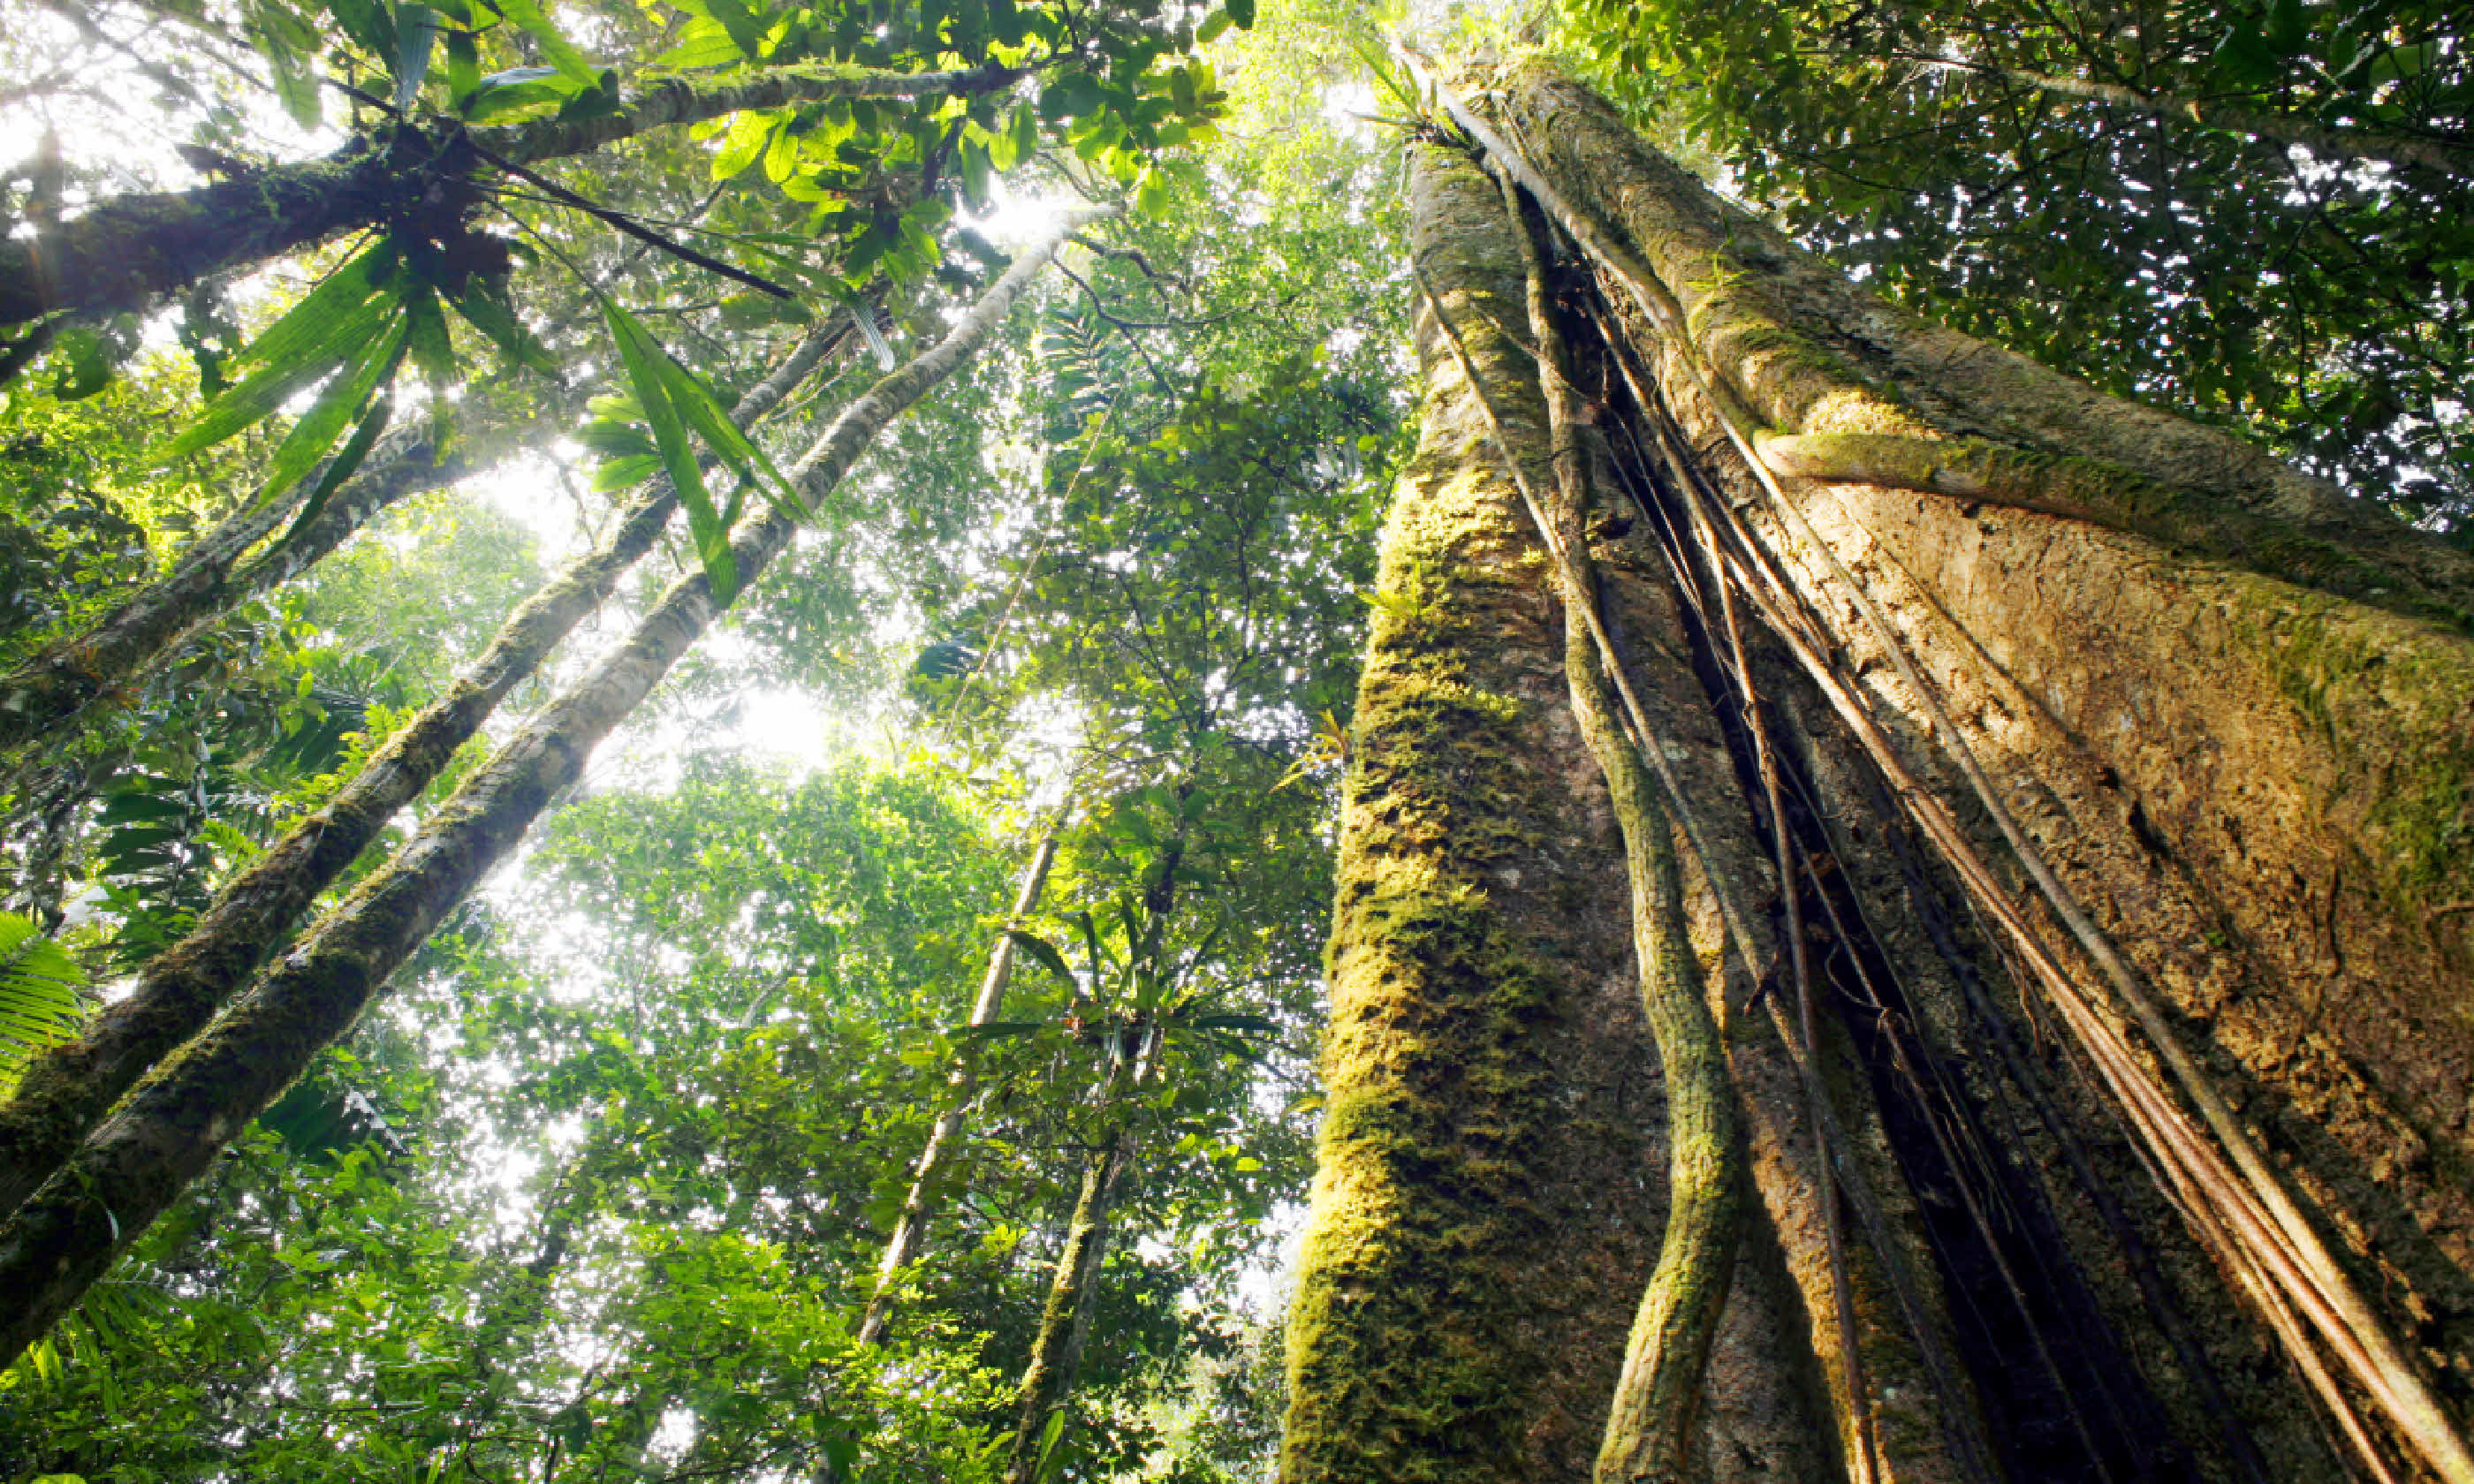 Rainforest, Ecuador (Shutterstock)